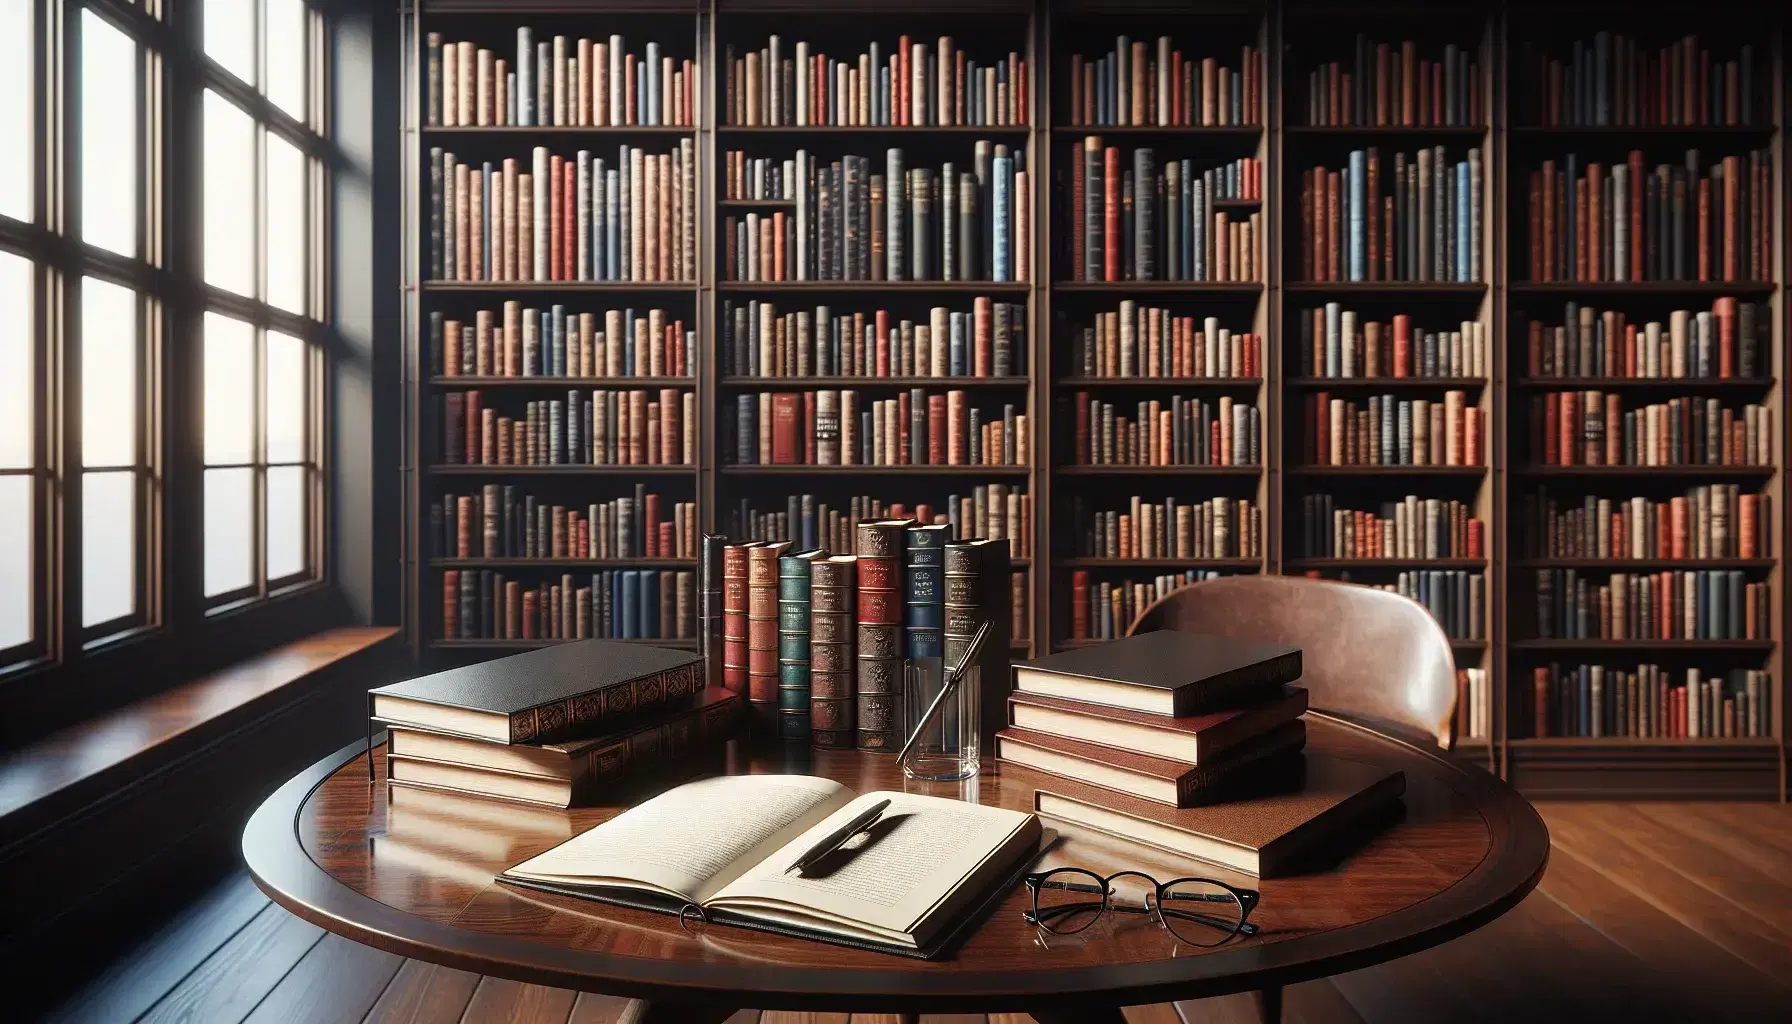 Biblioteca con estantes de madera oscura llenos de libros coloridos, mesa con cuaderno abierto, pluma y gafas, ambiente cálido y ventana con cortinas.